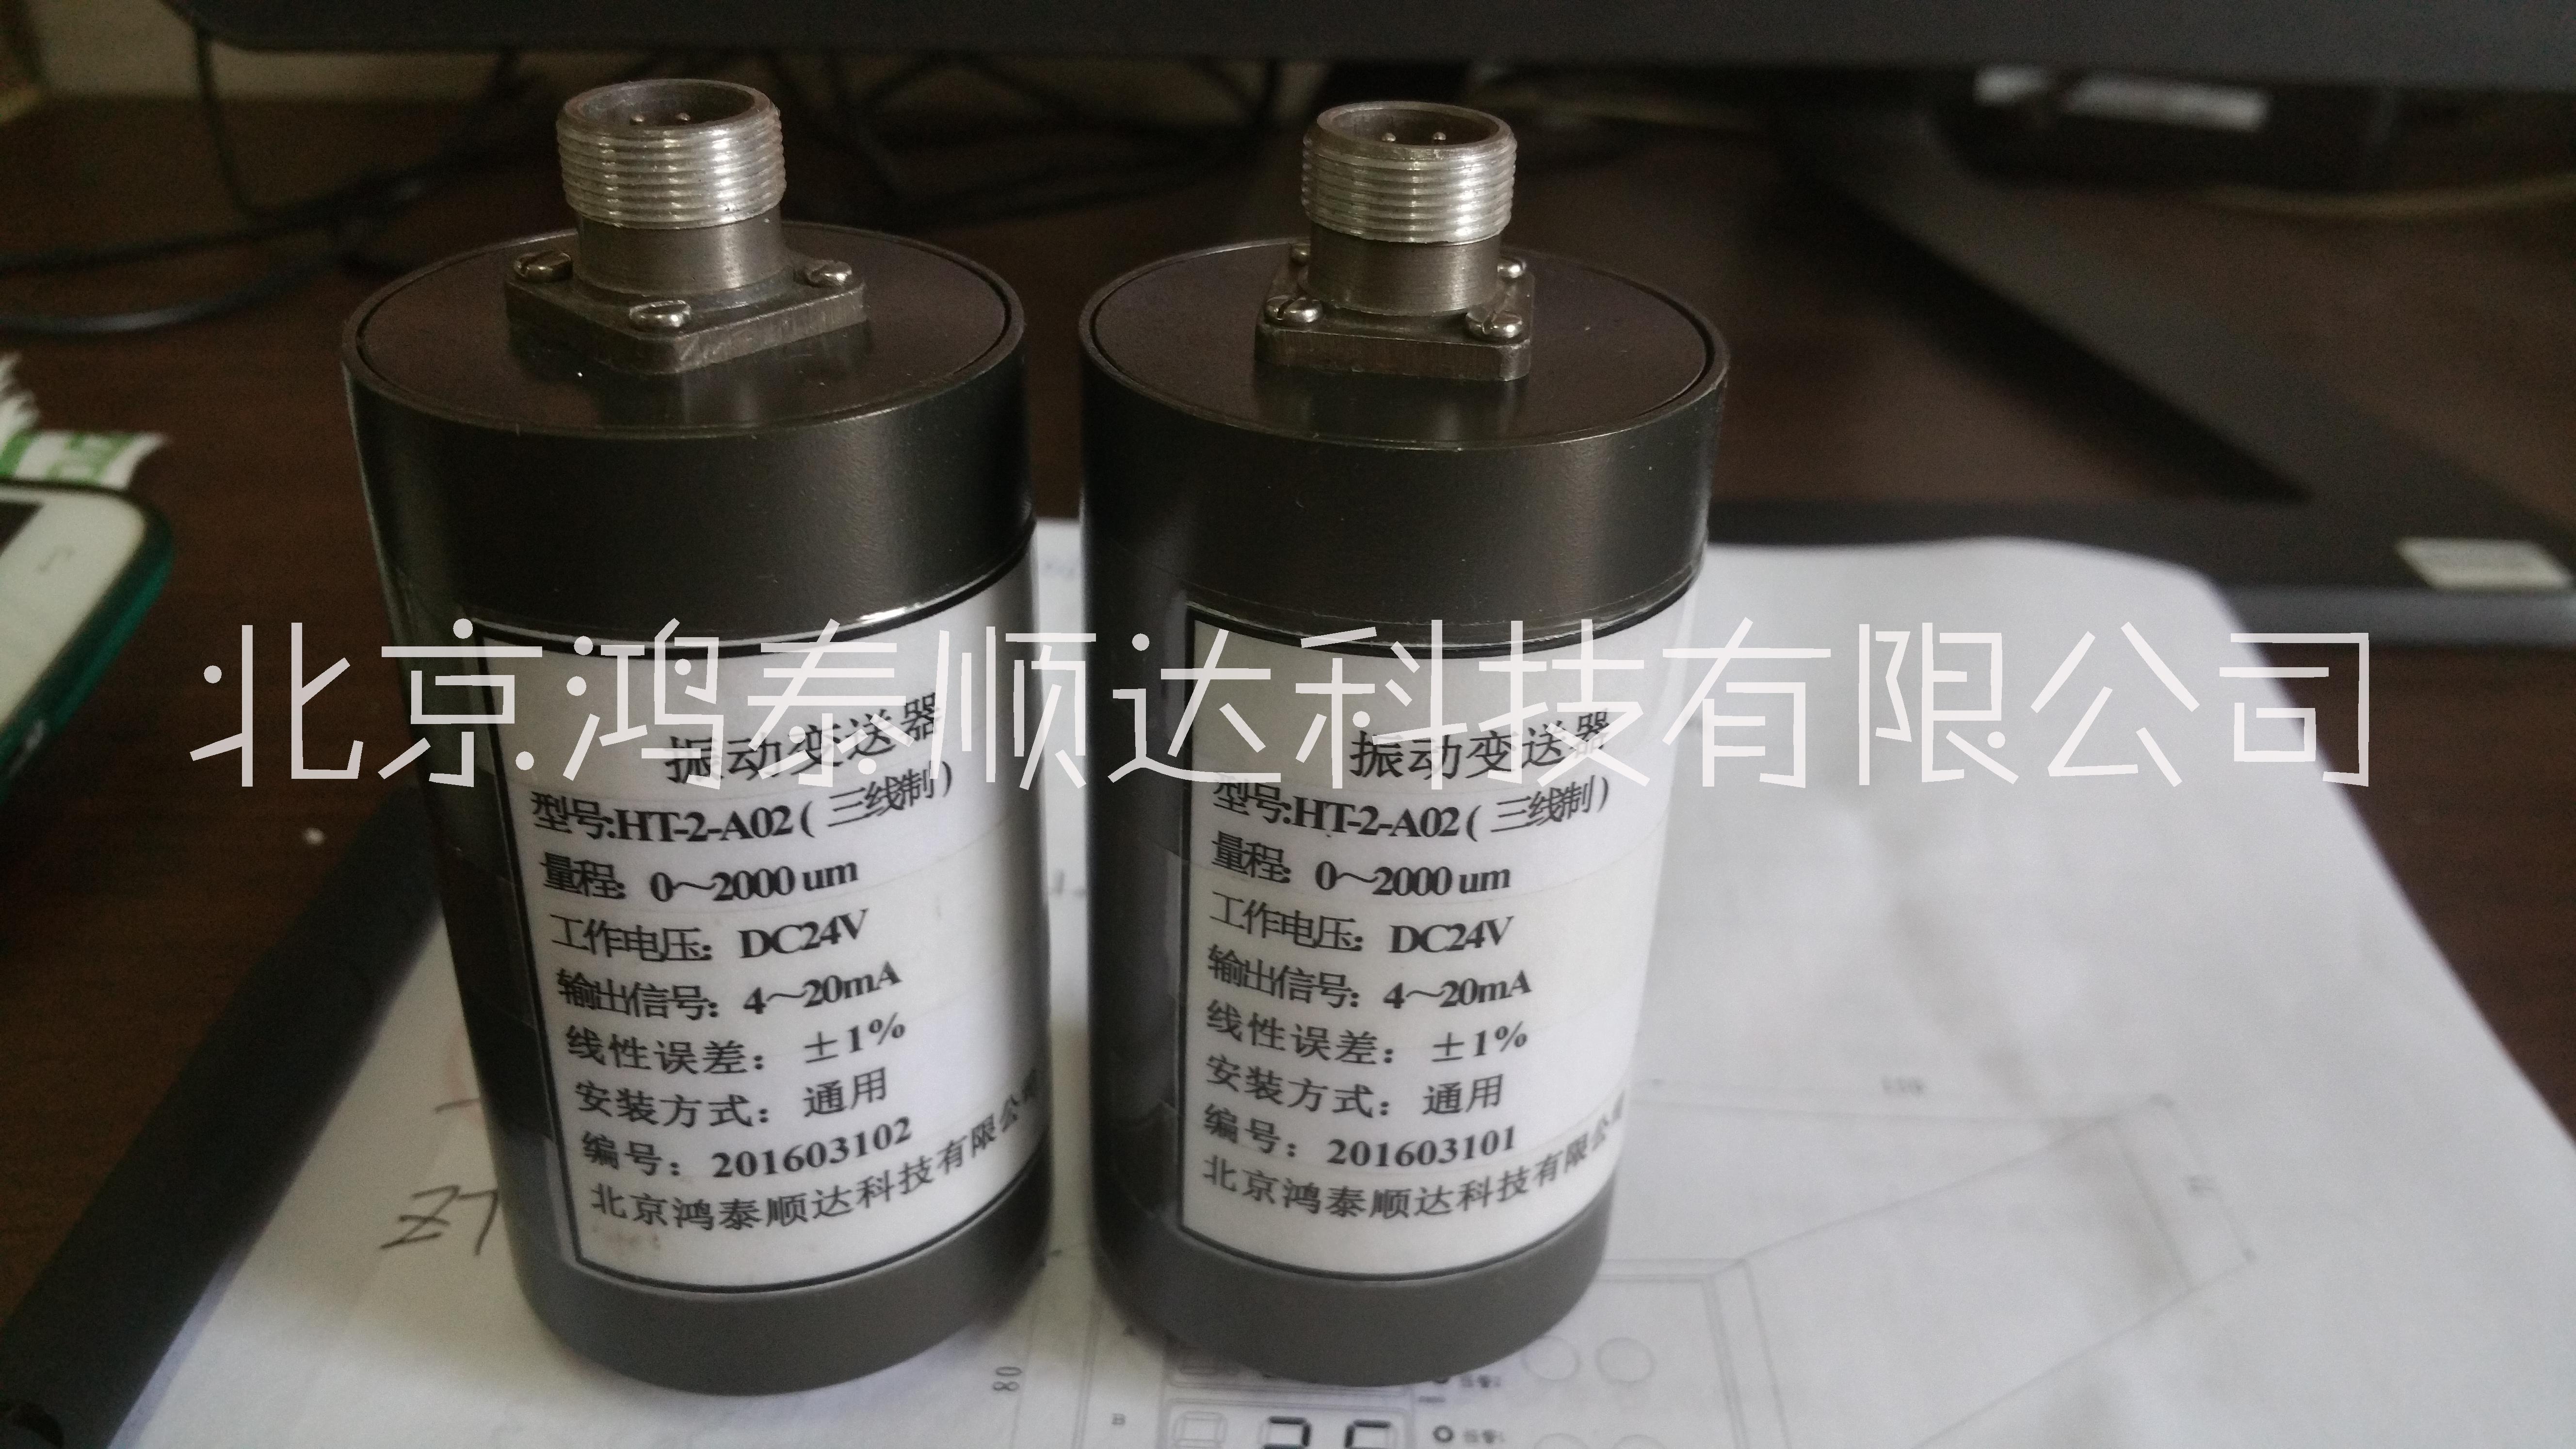 北京鸿泰顺达长期供应TM502E两线制一体化振动变送器；TM502E两线制一体化振动变送器市场价格|供货电话